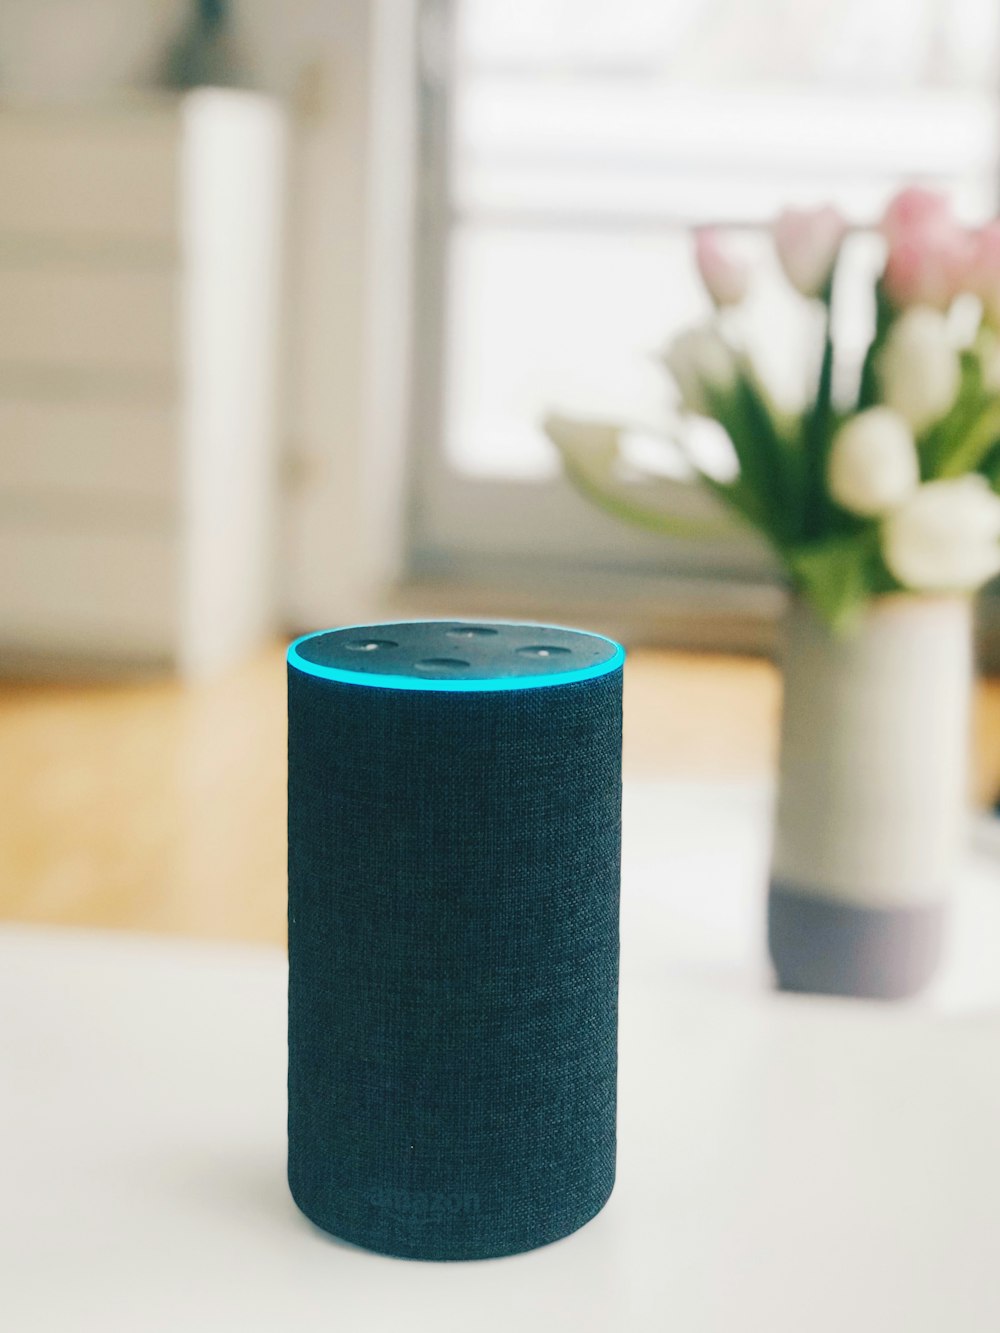 Haut-parleur Amazon Echo de 1ère génération